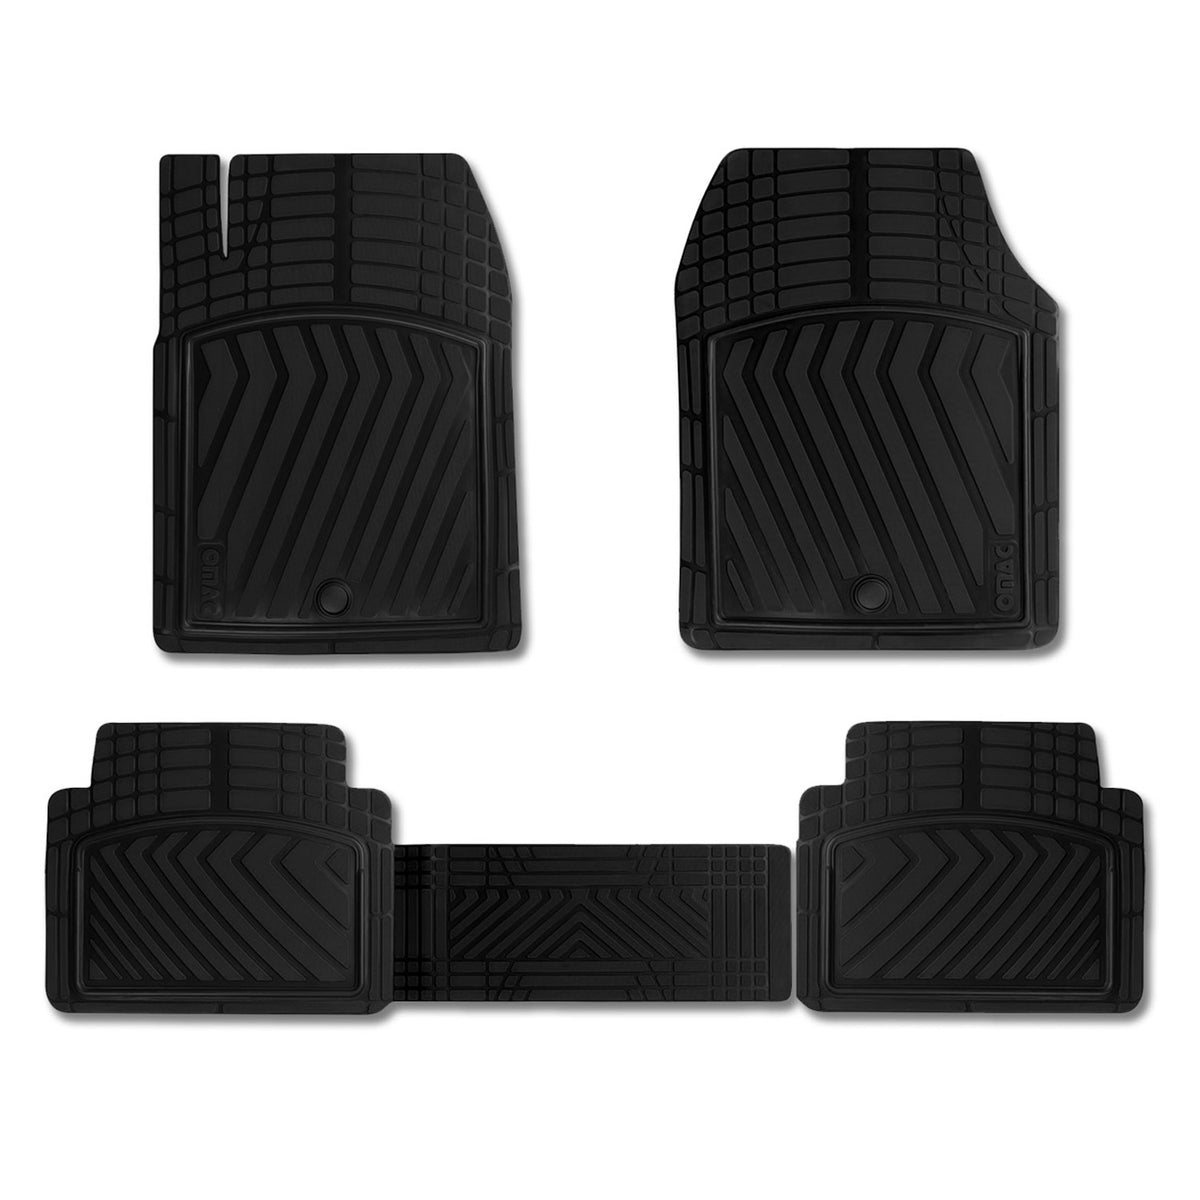 Fußmatten Gummimatten 3D Antirutsch für VW Jetta Passat Gummi Schwarz 5tlg